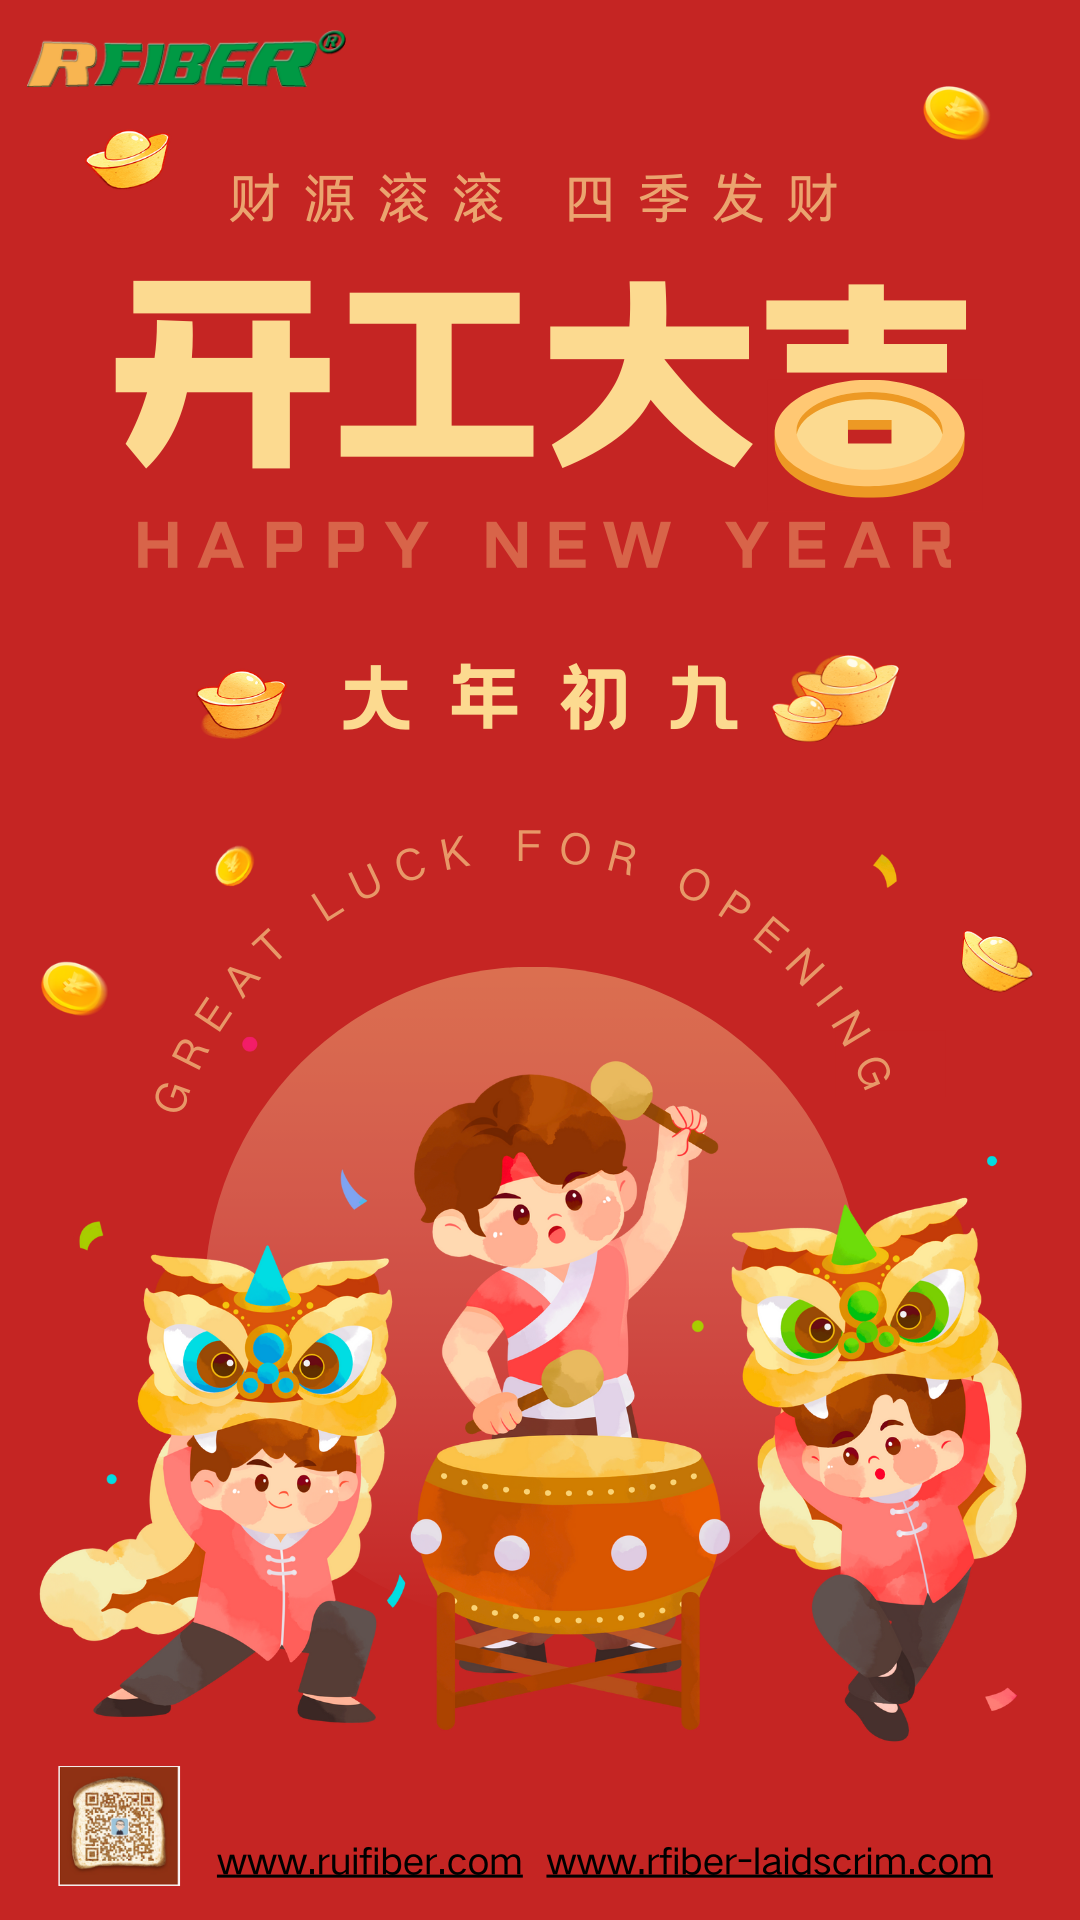 Shanghai Ruifiber nimmt den Betrieb nach der chinesischen Neujahrsfeier wieder auf